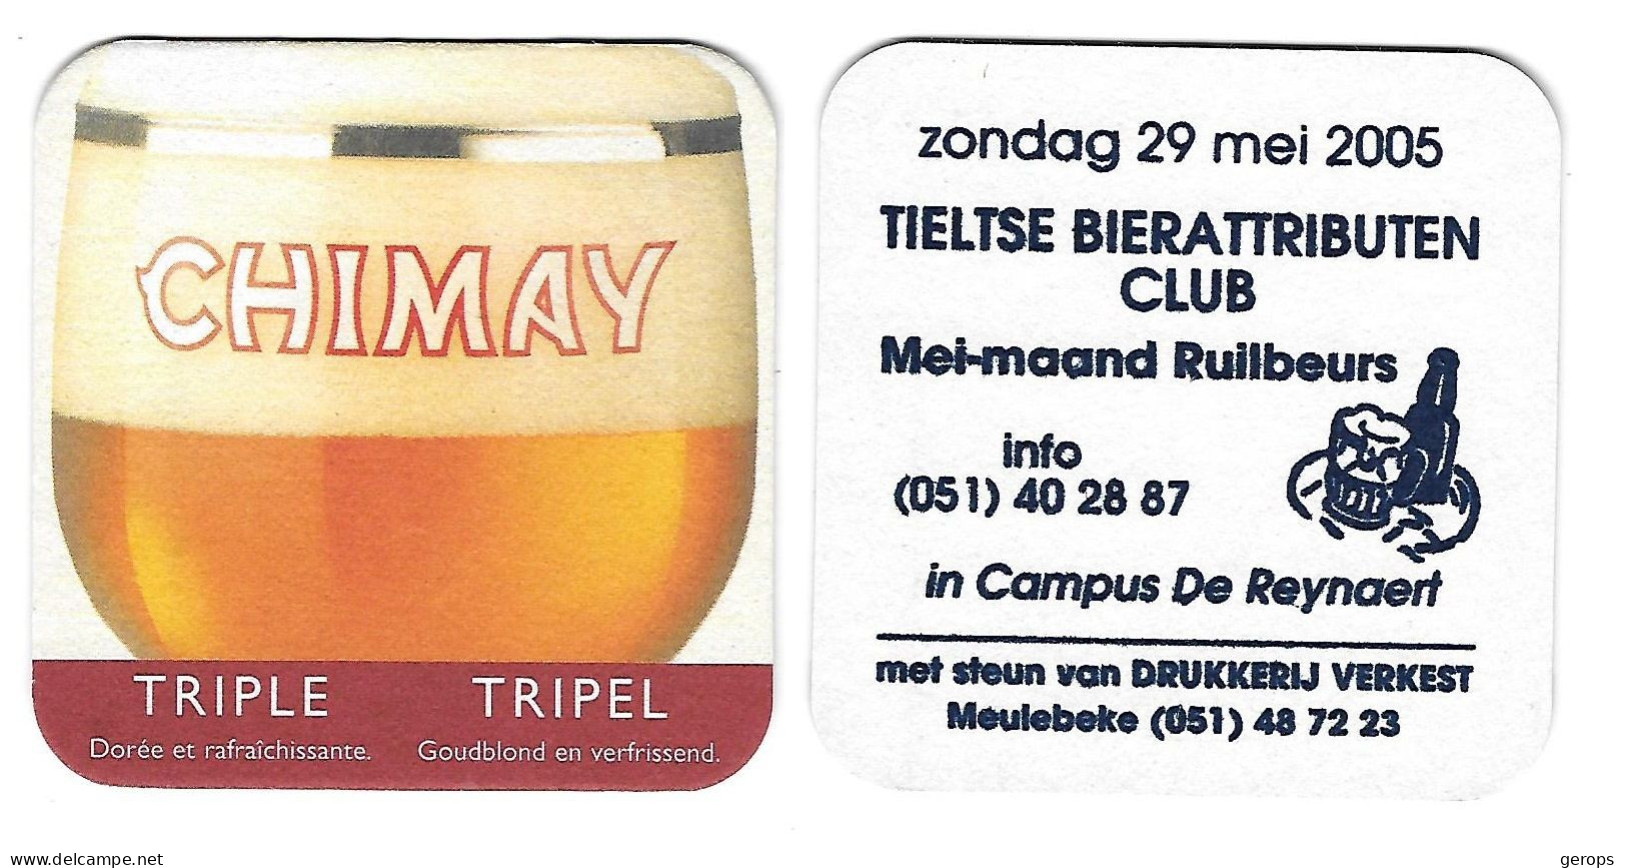 11a Chimay  Tripel Rv Tieltse BA Club 29 Mei 2005 - Bierdeckel